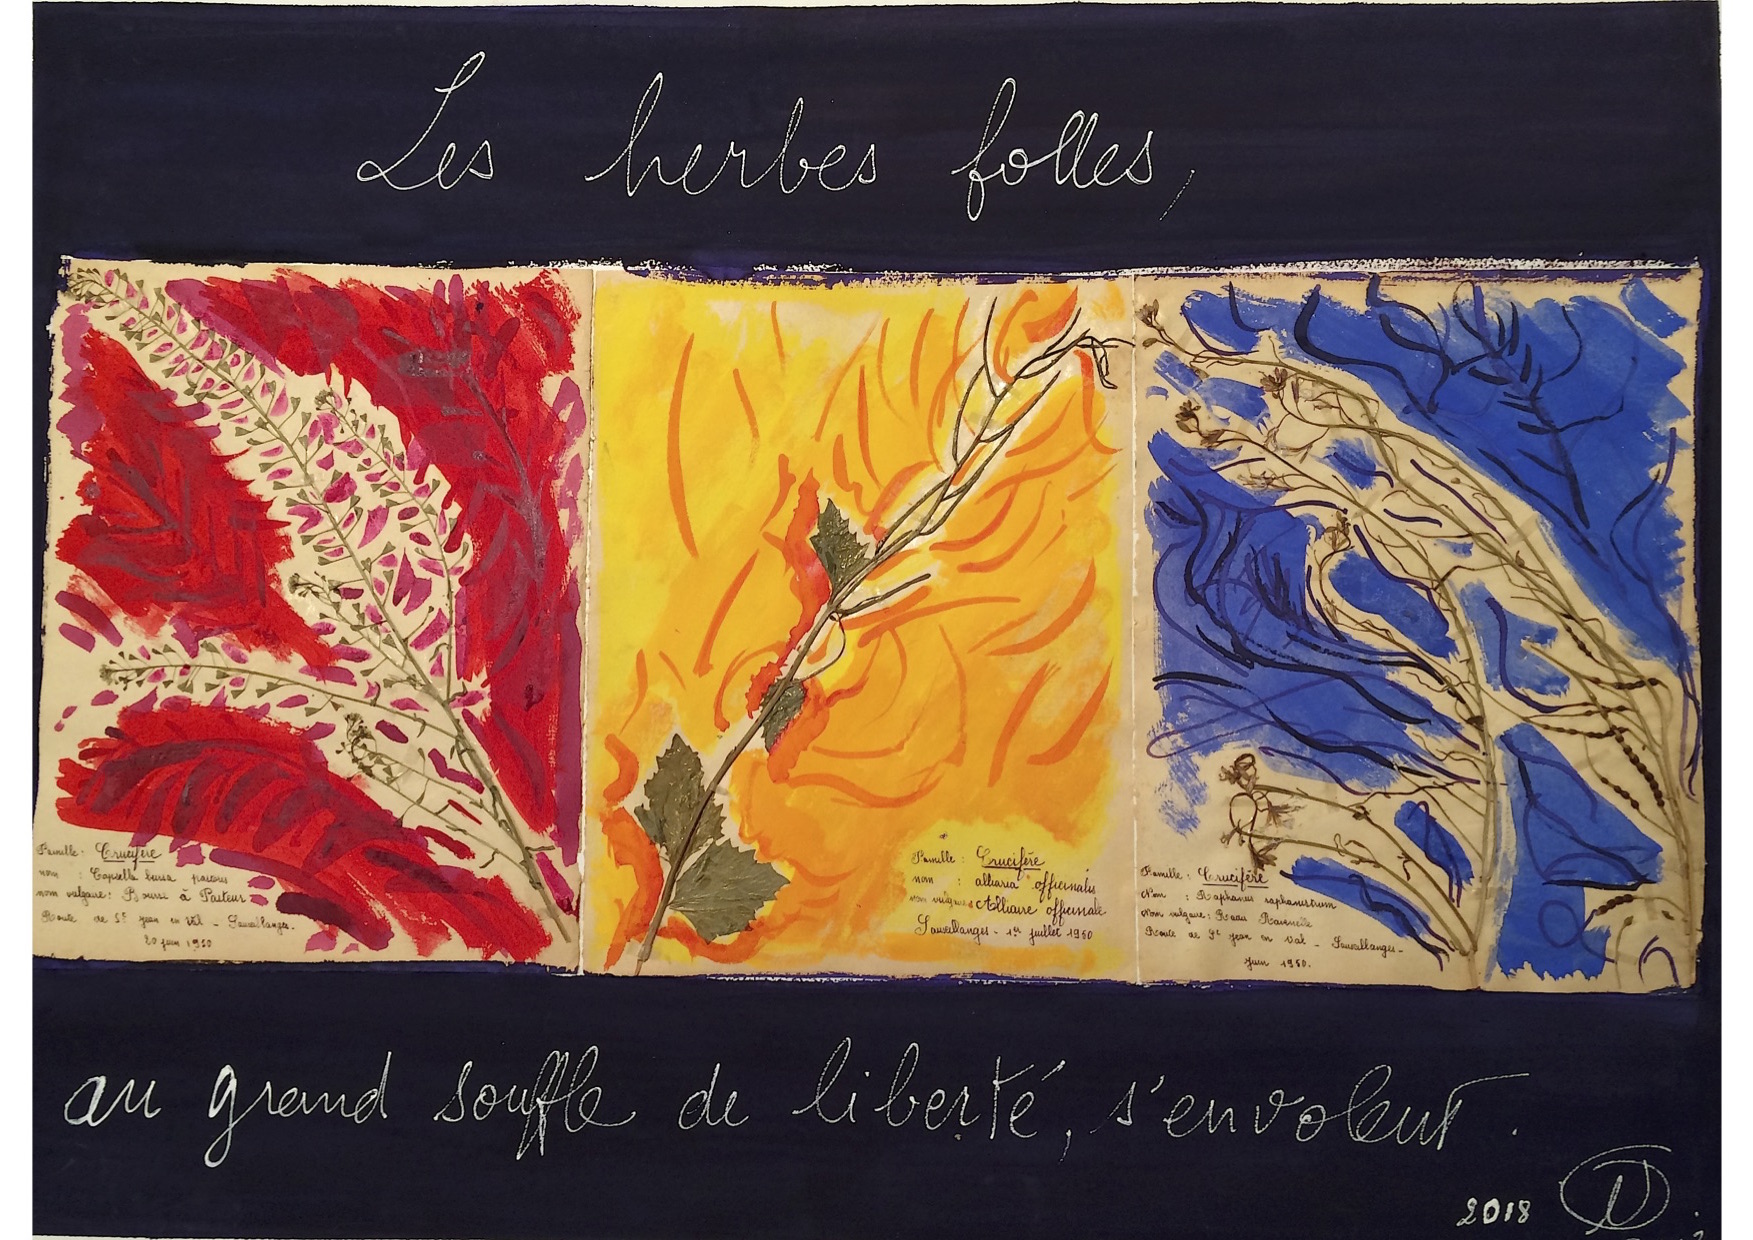 Exposition de Nathalie Pérus "Le Herbes Folles" Restaurant les Caudalies Vichy